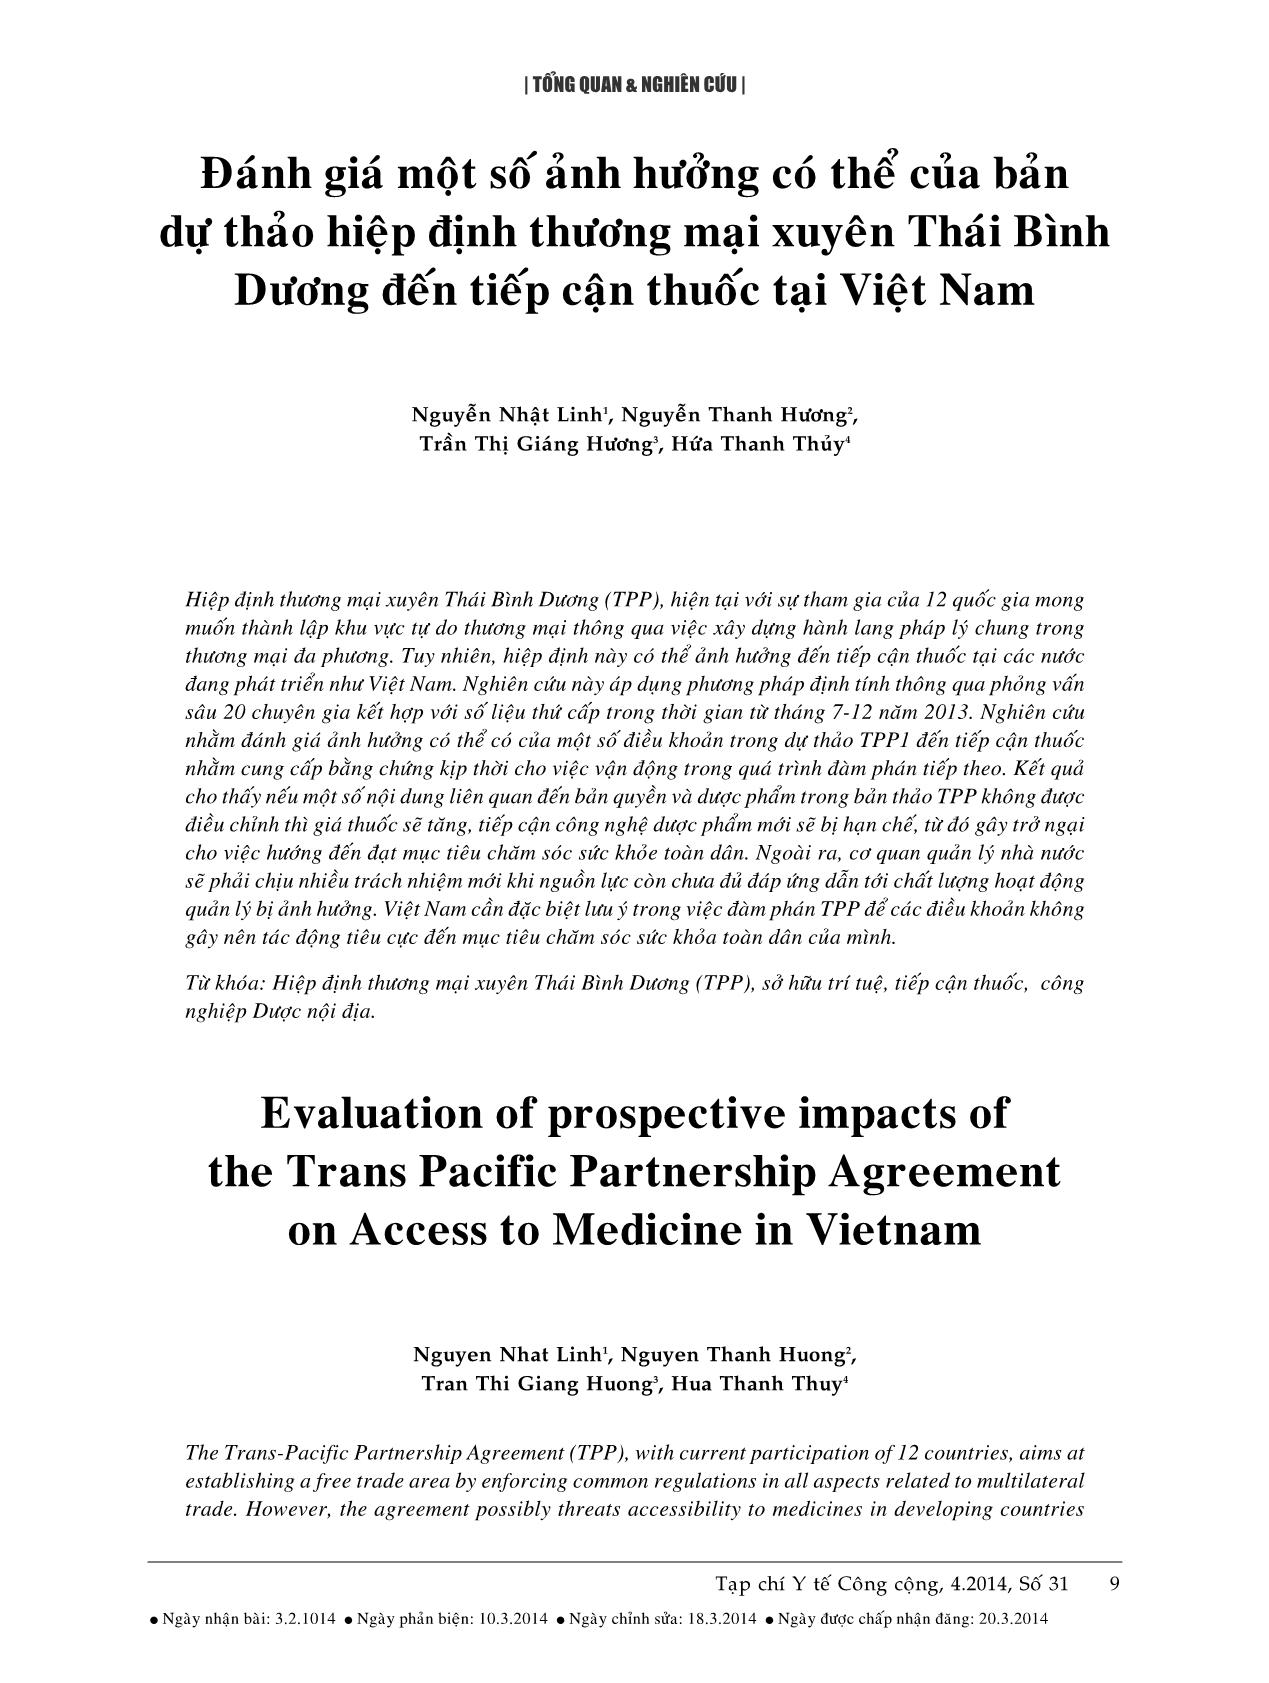 Đánh giá một số ảnh hưởng có thể của bản dự thảo hiệp định thương mại xuyên Thái Bình Dương đến tiếp cận thuốc tại Việt Nam trang 1